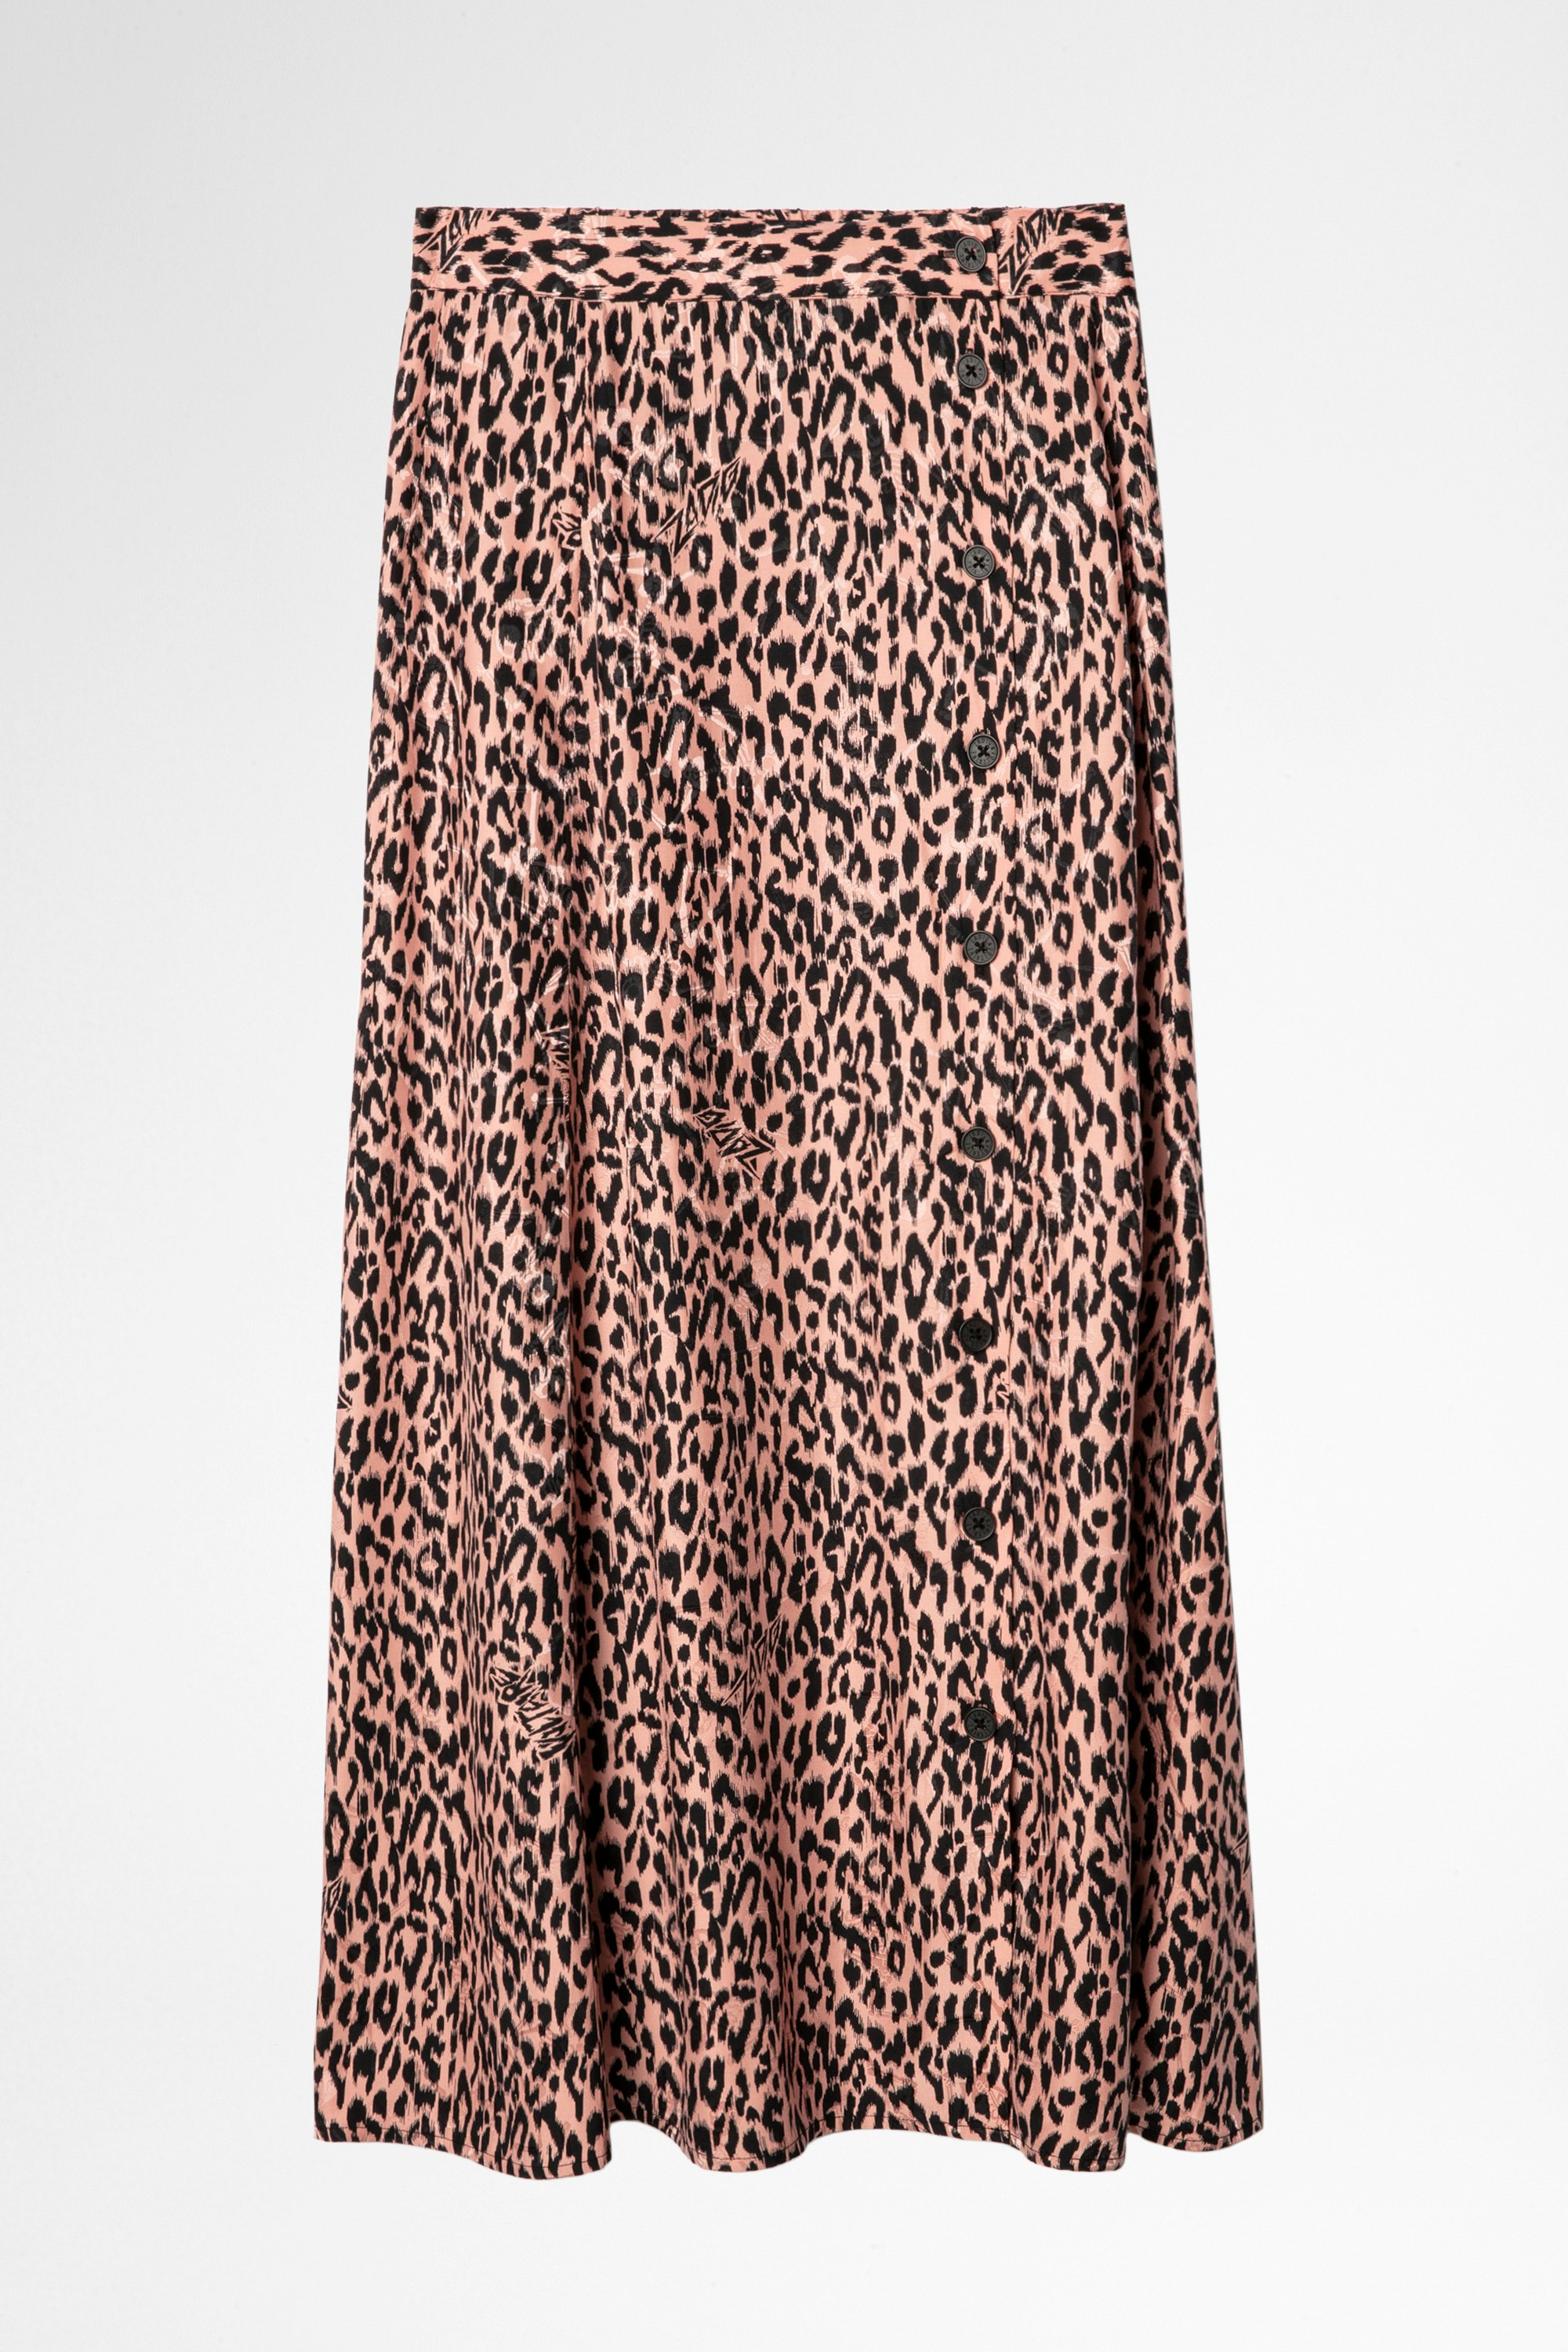 Rock June Silk Skirt Women’s leopard print long skirt